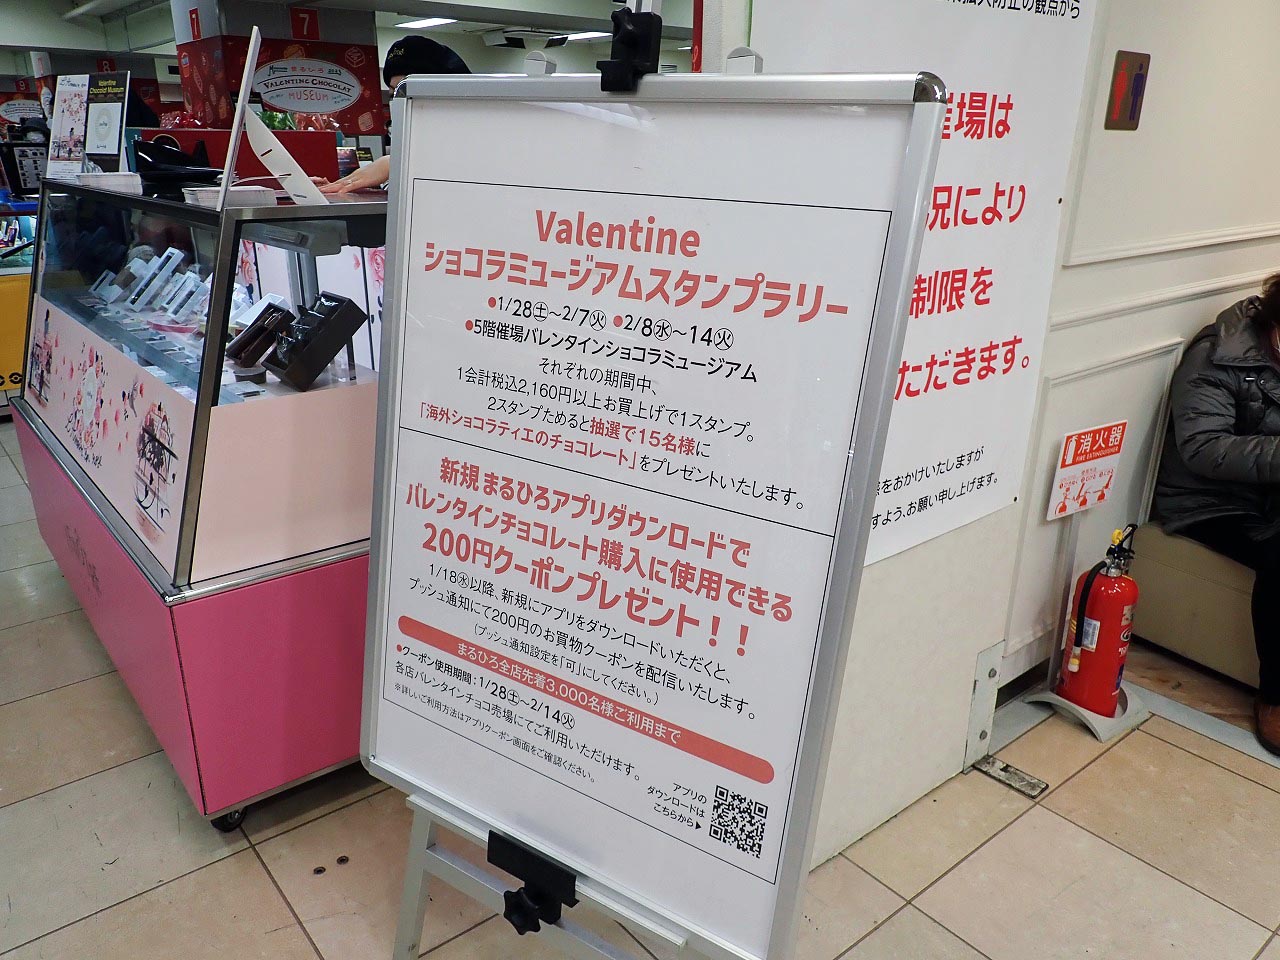 「バレンタインショコラミュージアム」を開催している『丸広百貨店 川越店』